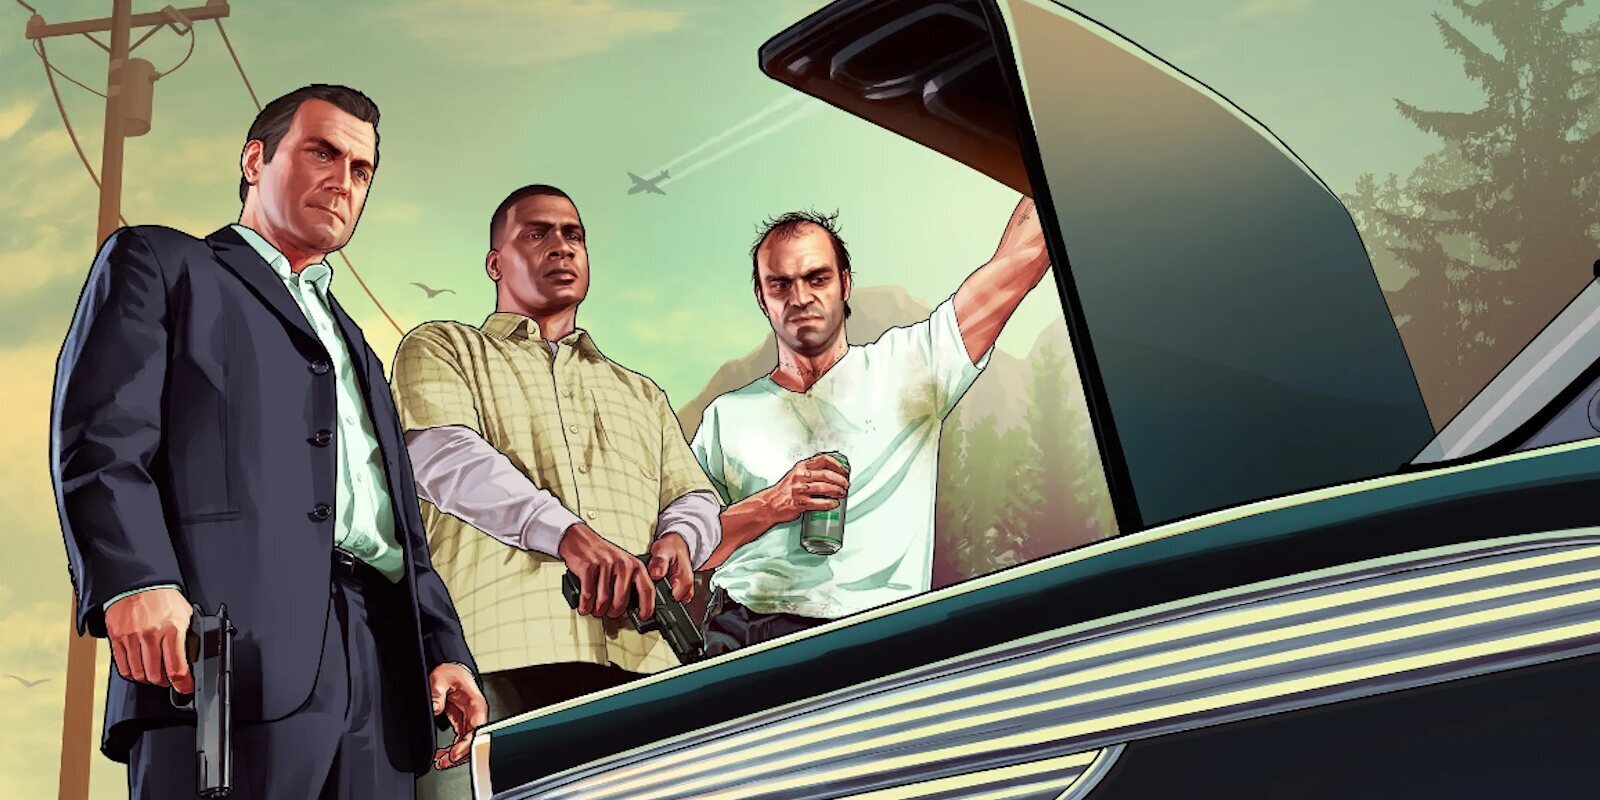 Rockstar parece haber eliminado el contenido transfóbico de 'Grand Theft Auto V' de nueva generación